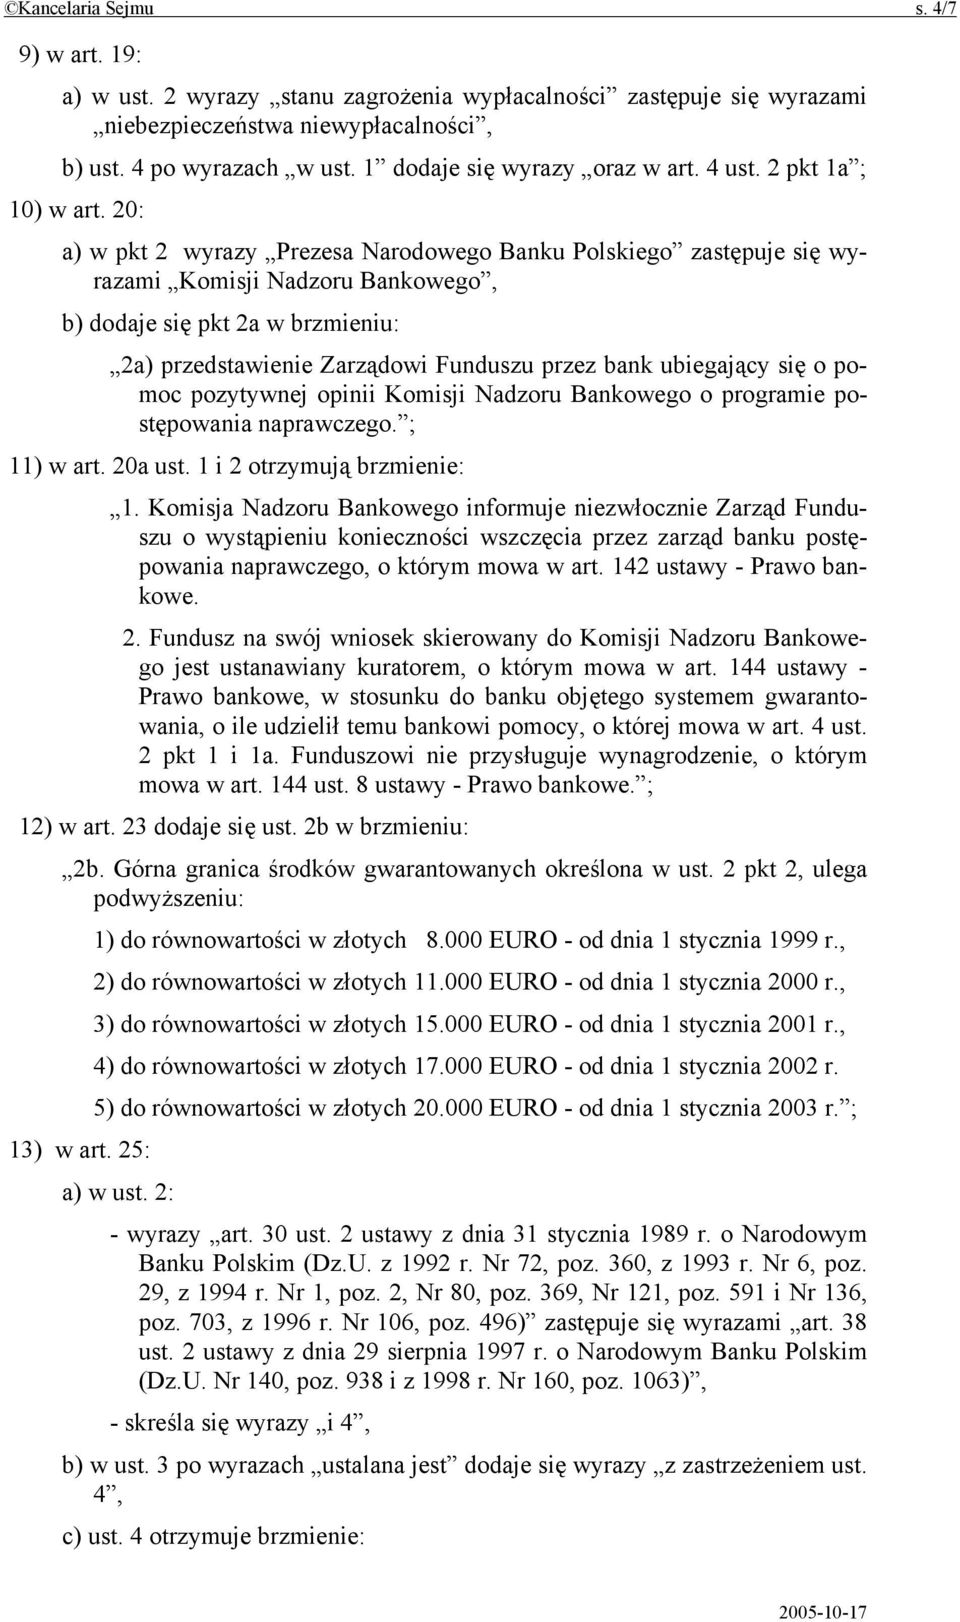 20: a) w pkt 2 wyrazy Prezesa Narodowego Banku Polskiego zastępuje się wyrazami Komisji Nadzoru Bankowego, b) dodaje się pkt 2a w brzmieniu: 2a) przedstawienie Zarządowi Funduszu przez bank